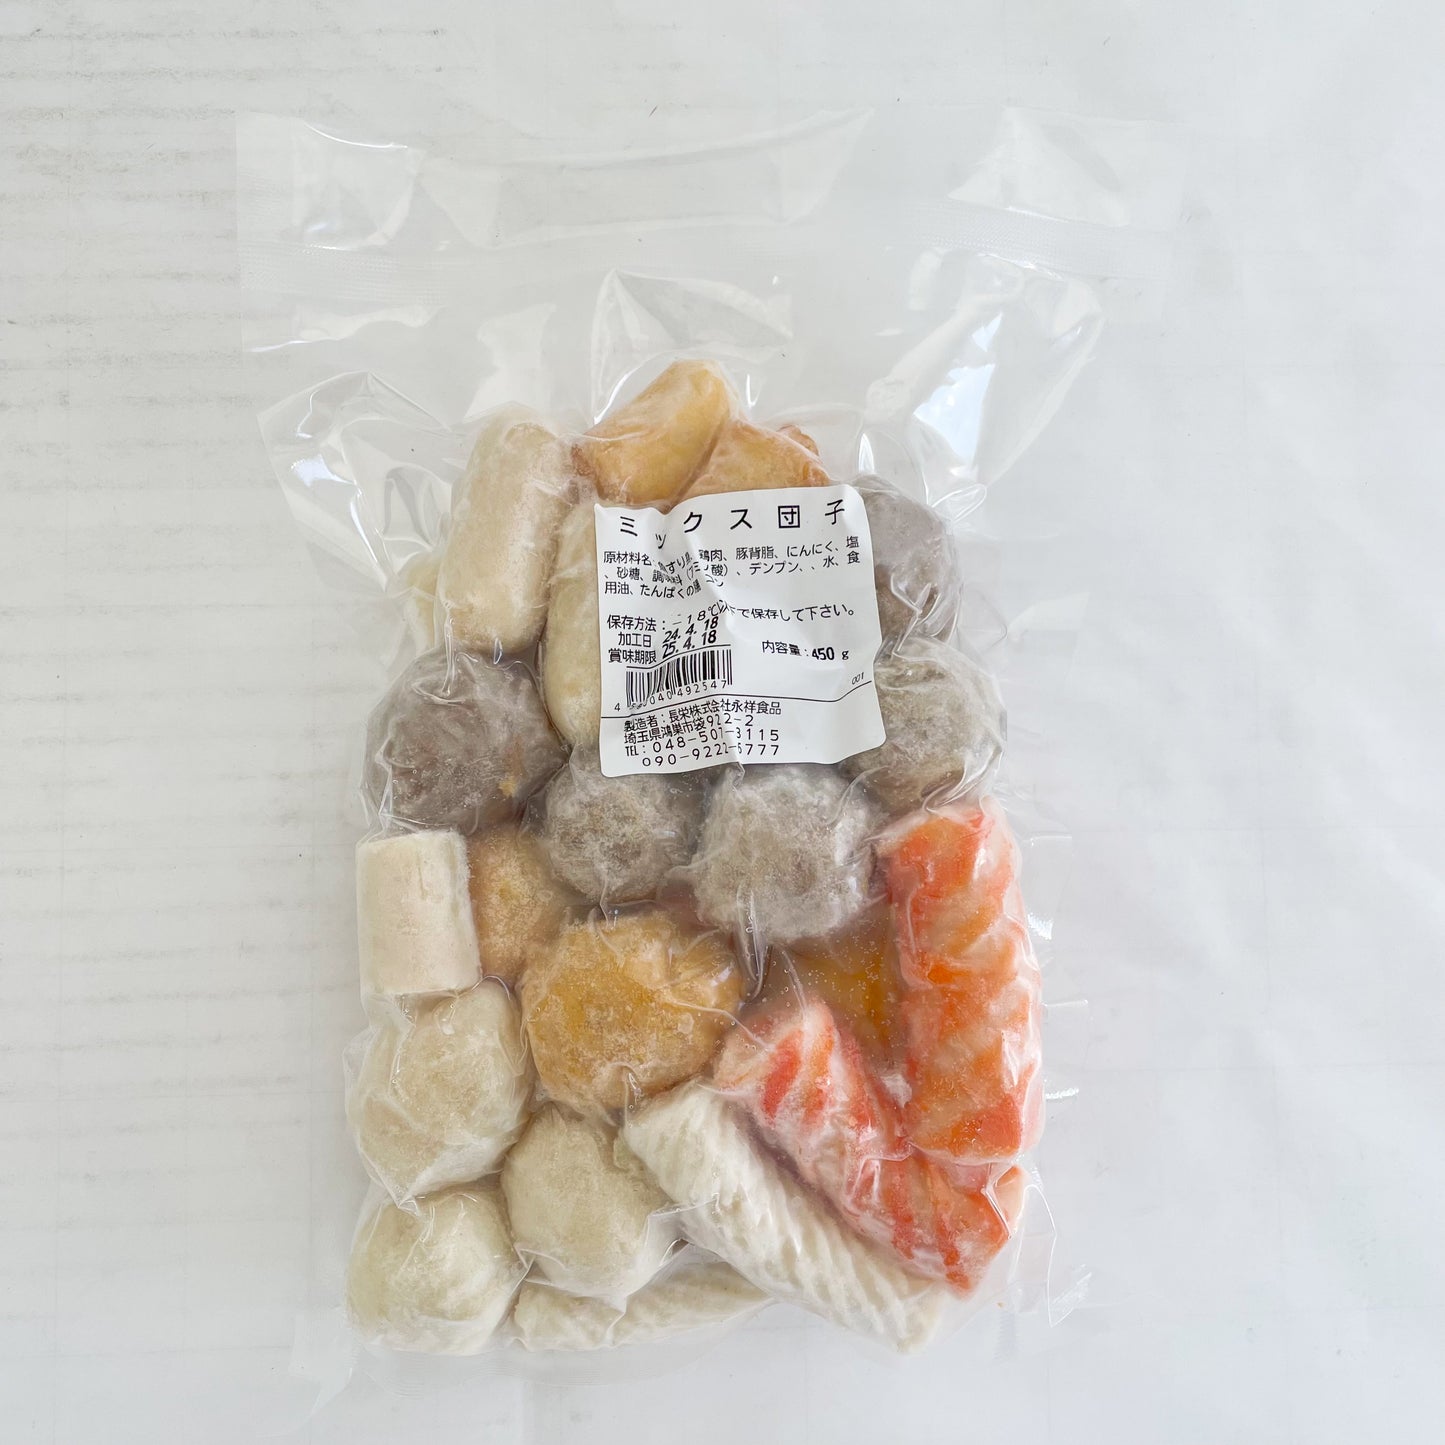 花様丸子 多彩丸子 ミックス団子 450g 日本国内加工 冷凍品